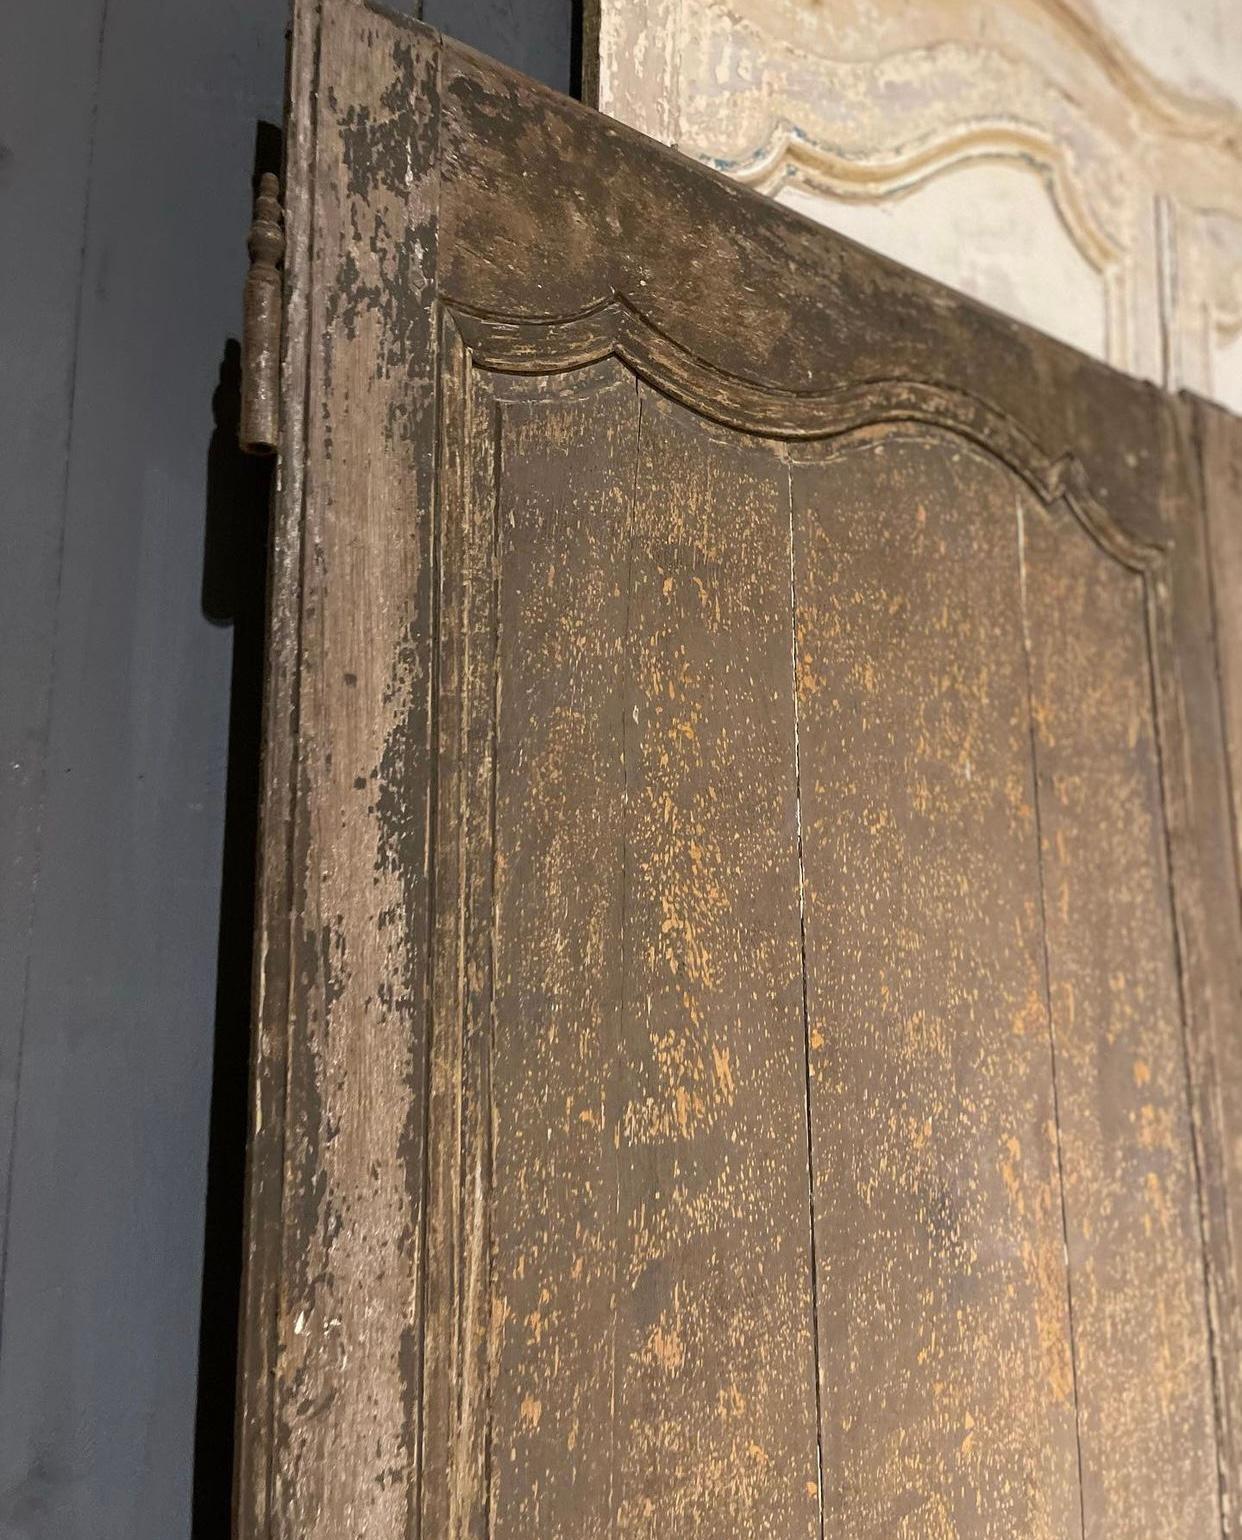 Pair French 18th Century Doors 3